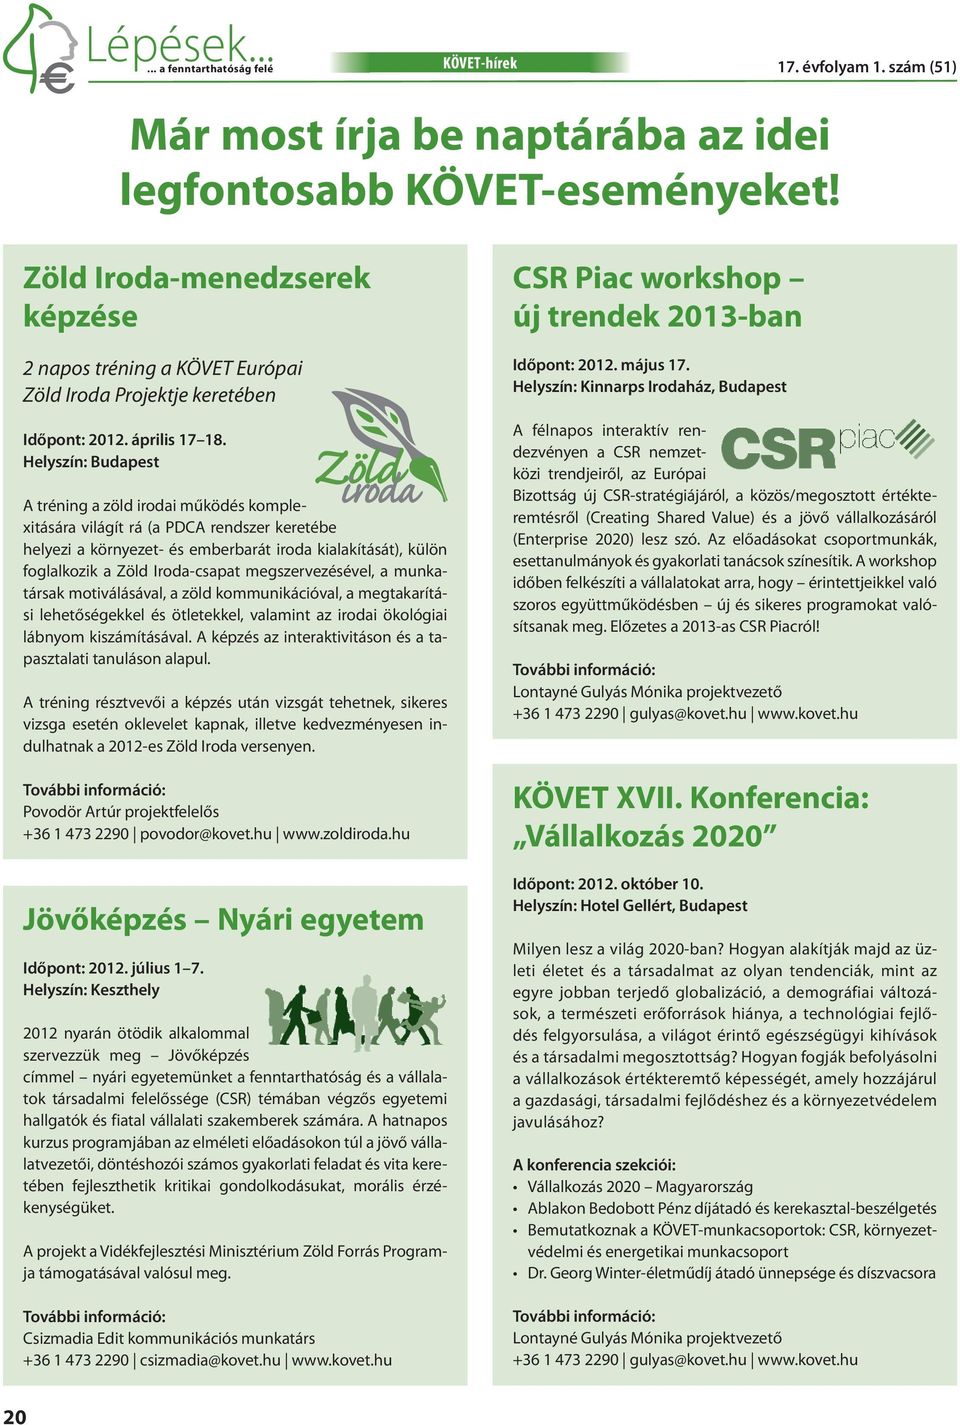 Helyszín: Budapest A tréning a zöld irodai működés komplexitására világít rá (a PDCA rendszer keretébe helyezi a környezet- és emberbarát iroda kialakítását), külön foglalkozik a Zöld Iroda-csapat